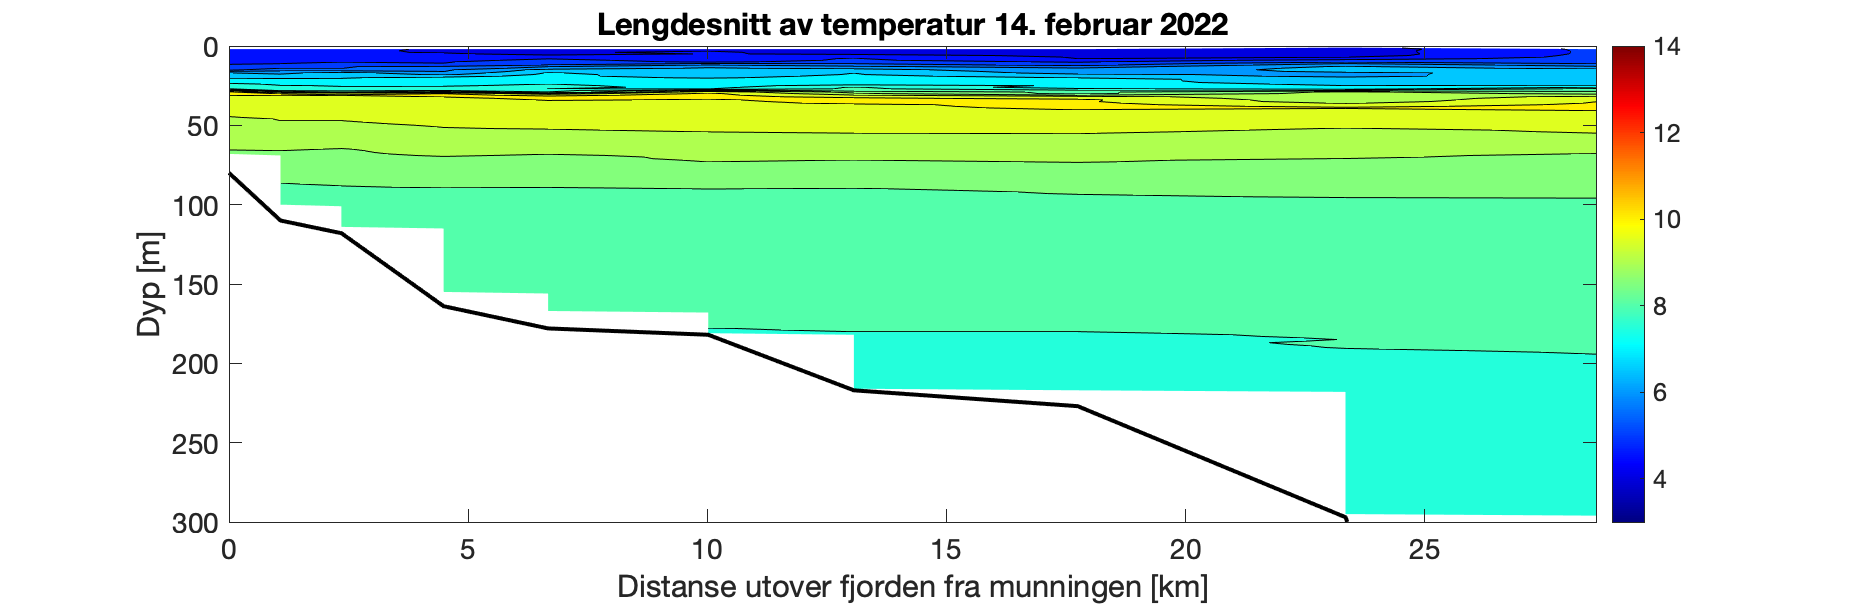 Figuren viser et histogram som illustrer variasjonen i temperatur i vannsøylen (0-300 meter) utover i Fjærlandsfjorden (0-30 km ut fjorden). Fargeskalaen representerer temperatur fra 14°C (rødt) til 3°C (fiolett). Det er relativt jevn dybdefordeling i temperatur langs hele fjorden med kaldt overflatevann og opp til 10°C på 20-30 m dyp. Deretter gradvis fra 9,5 til 8°C nedover i vannsøylen.